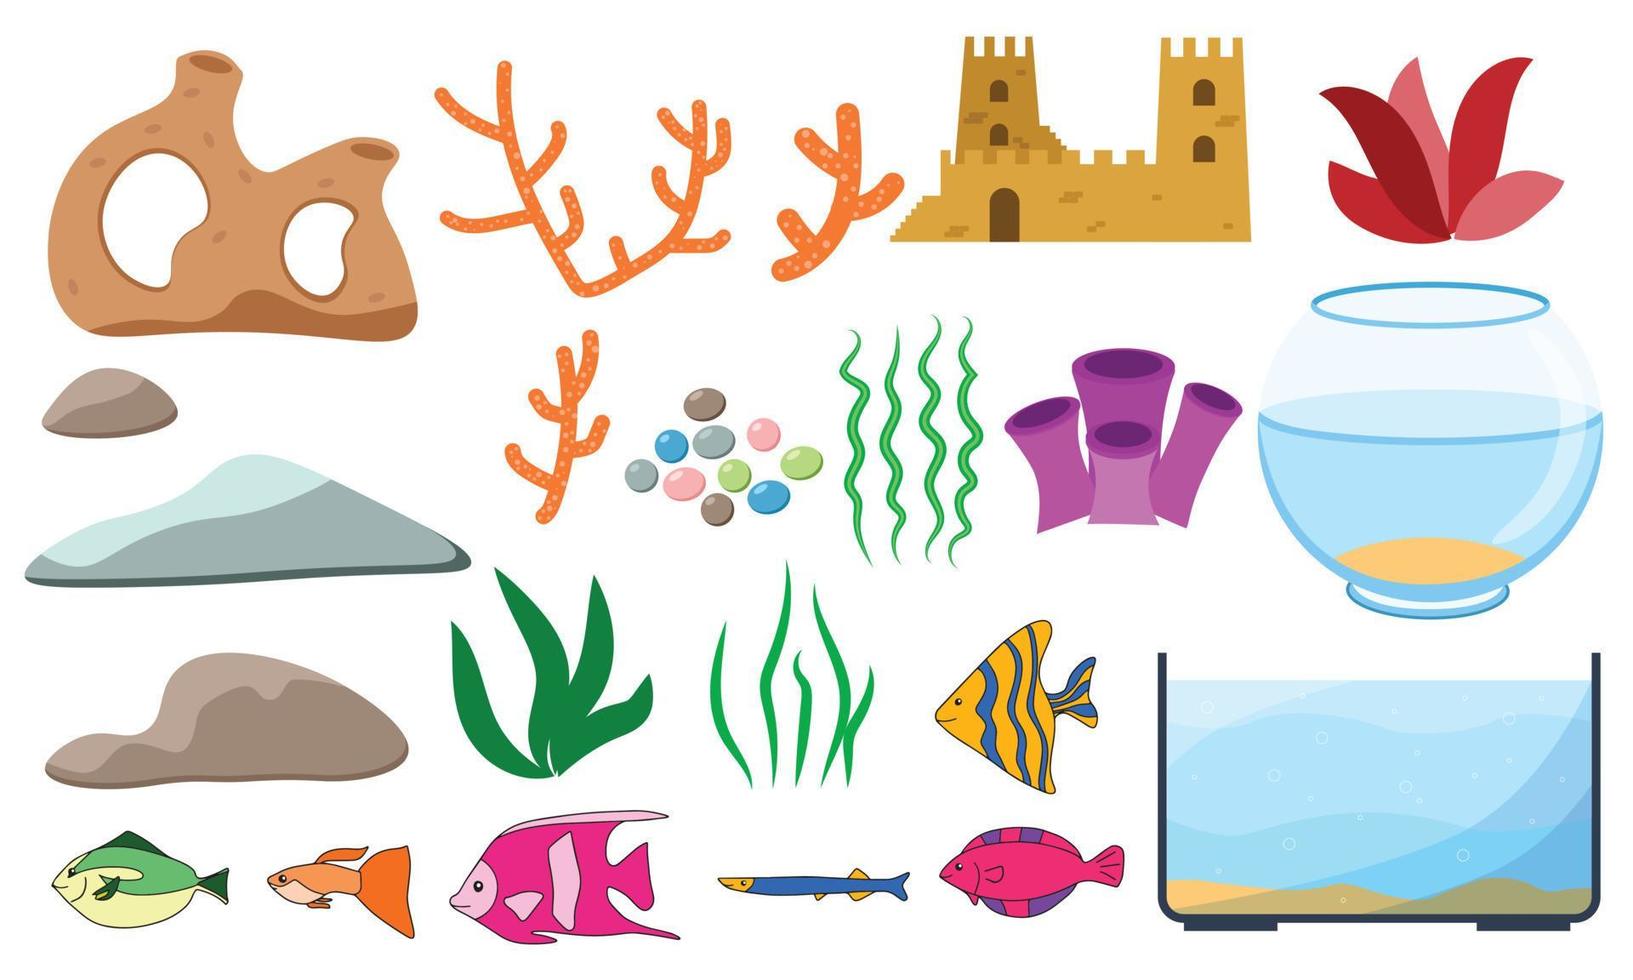 avaristik tecknad serie med akvariefiskar, koraller, stenar, tång, snäckor och akvarietankar i olika former, vektorillustration vektor